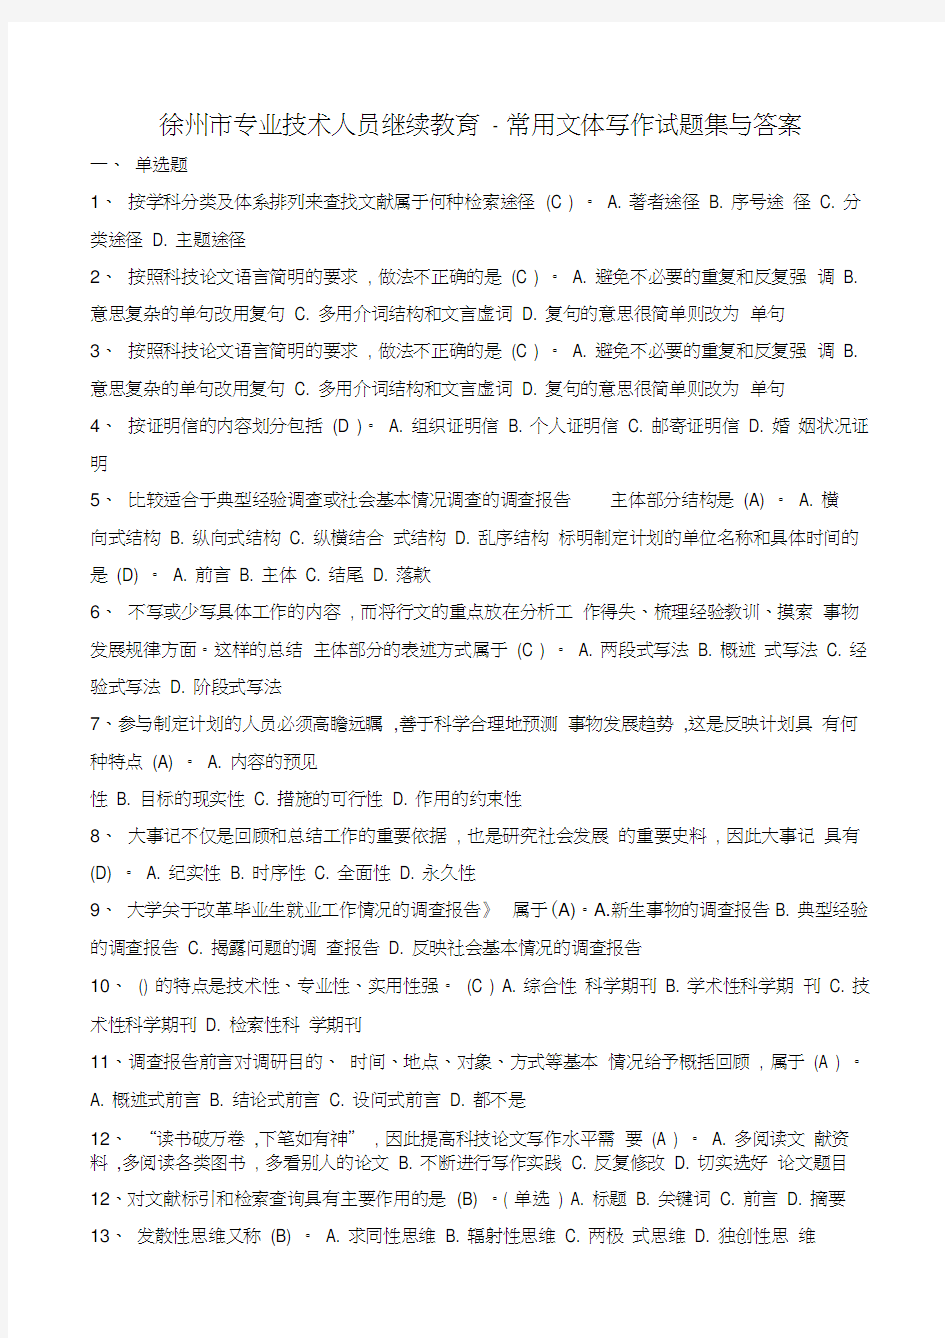 徐州市专业技术人员继续教育-常用文体写作题集及答案教学教材